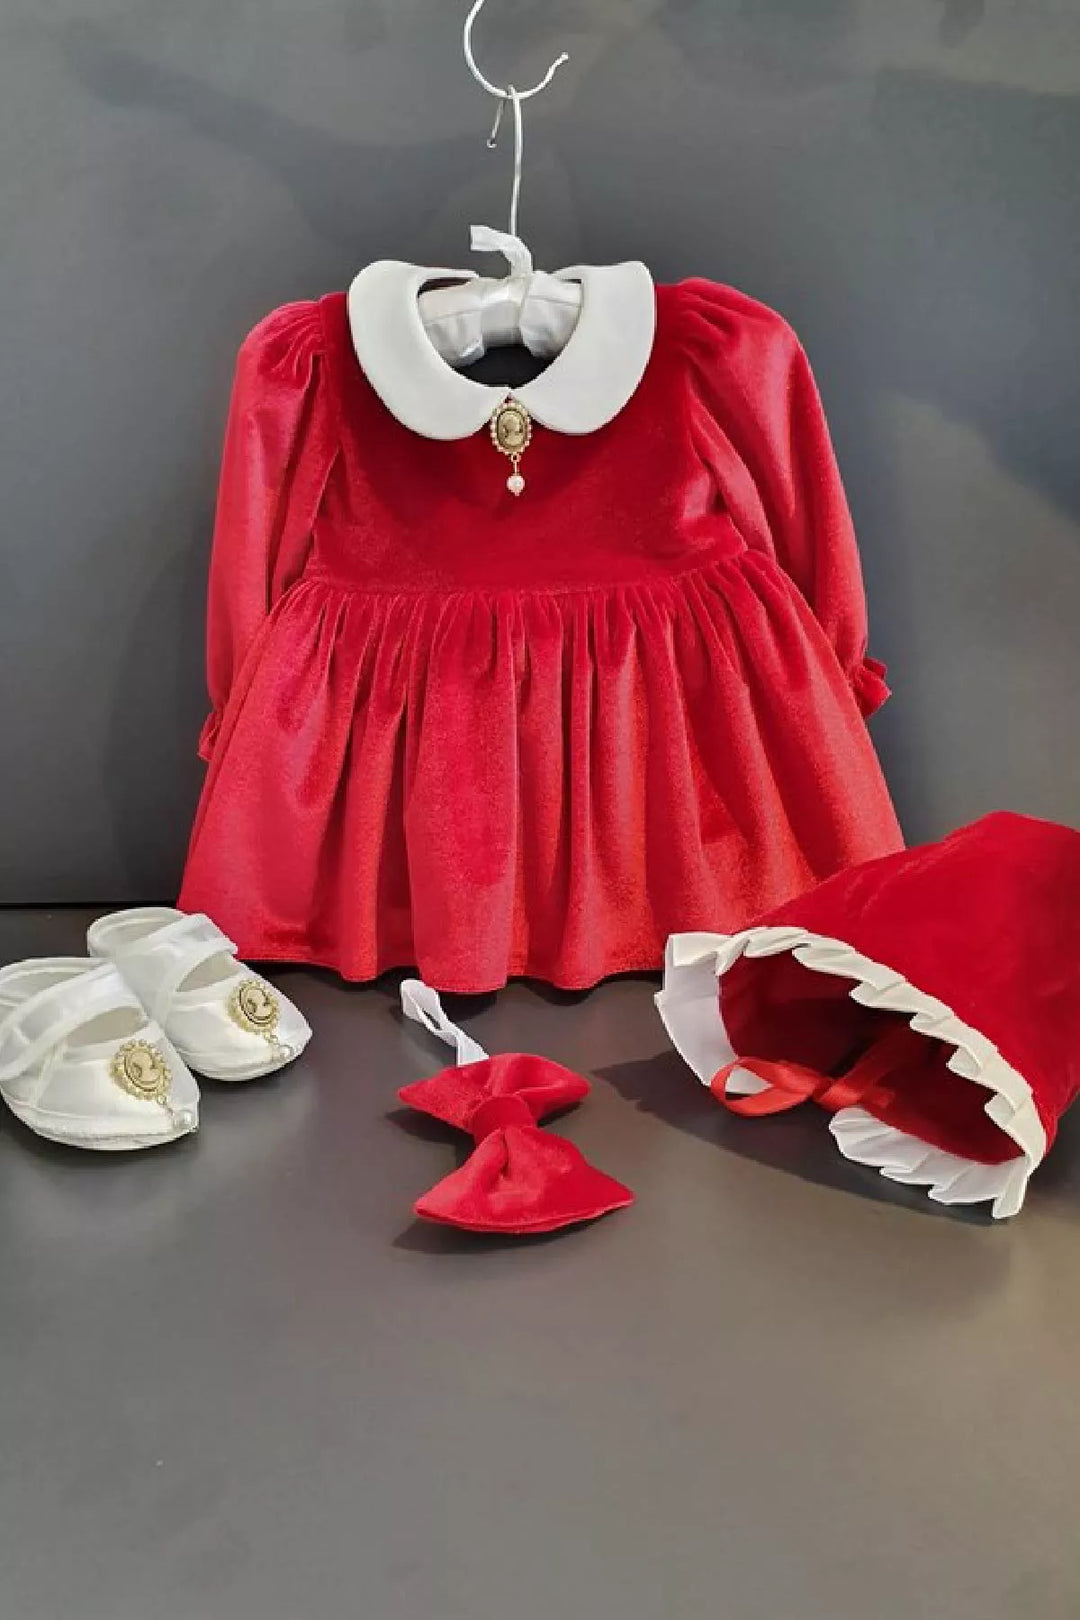 Red velvet baby dress